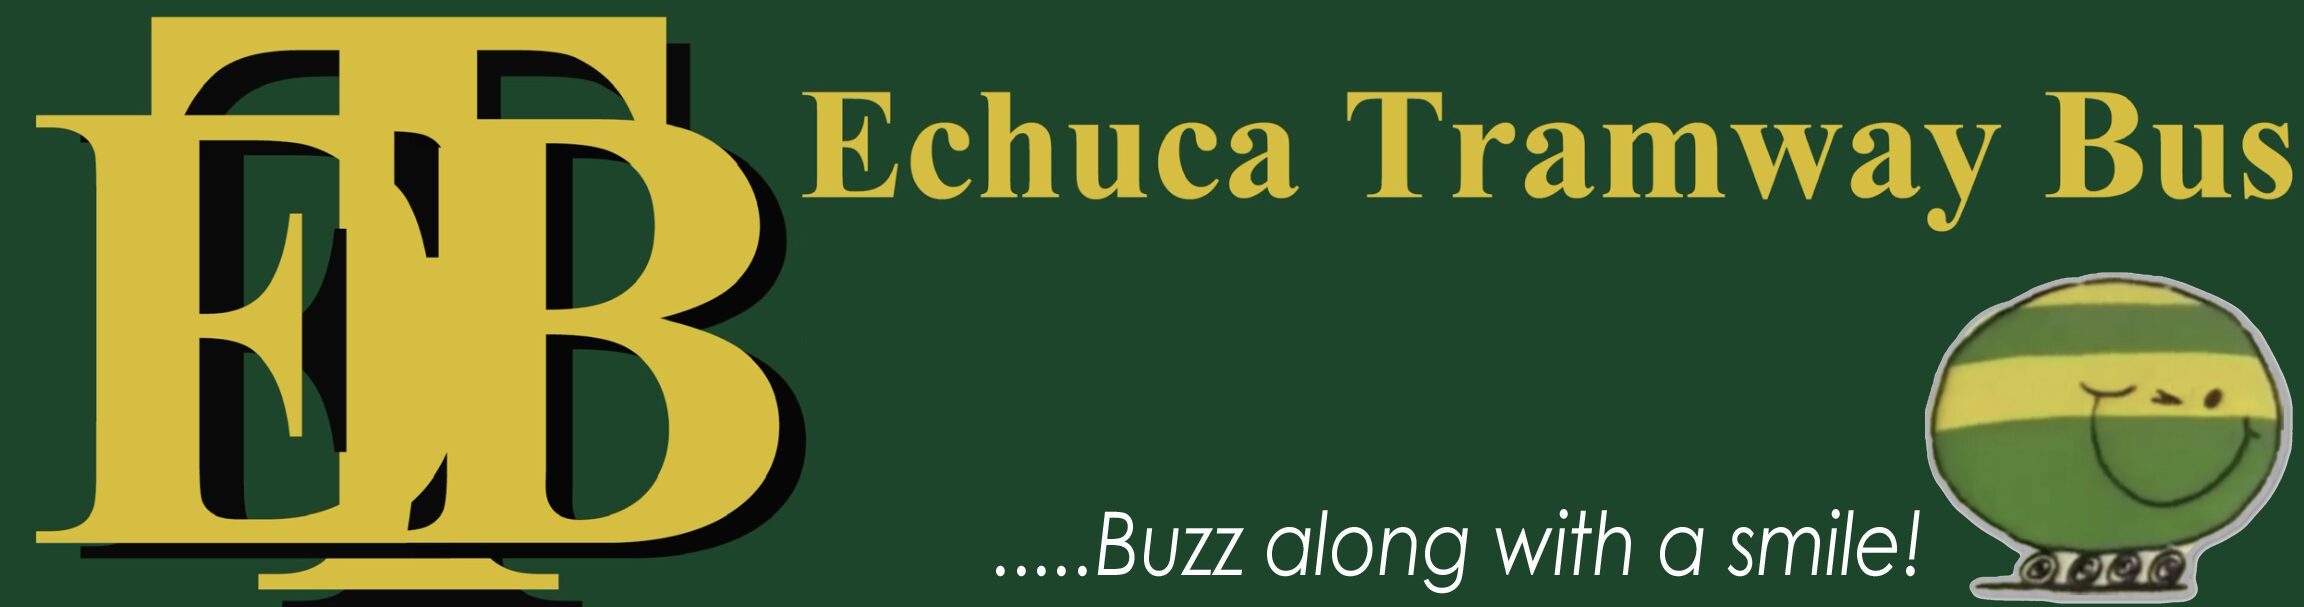 Echuca Tramway Bus